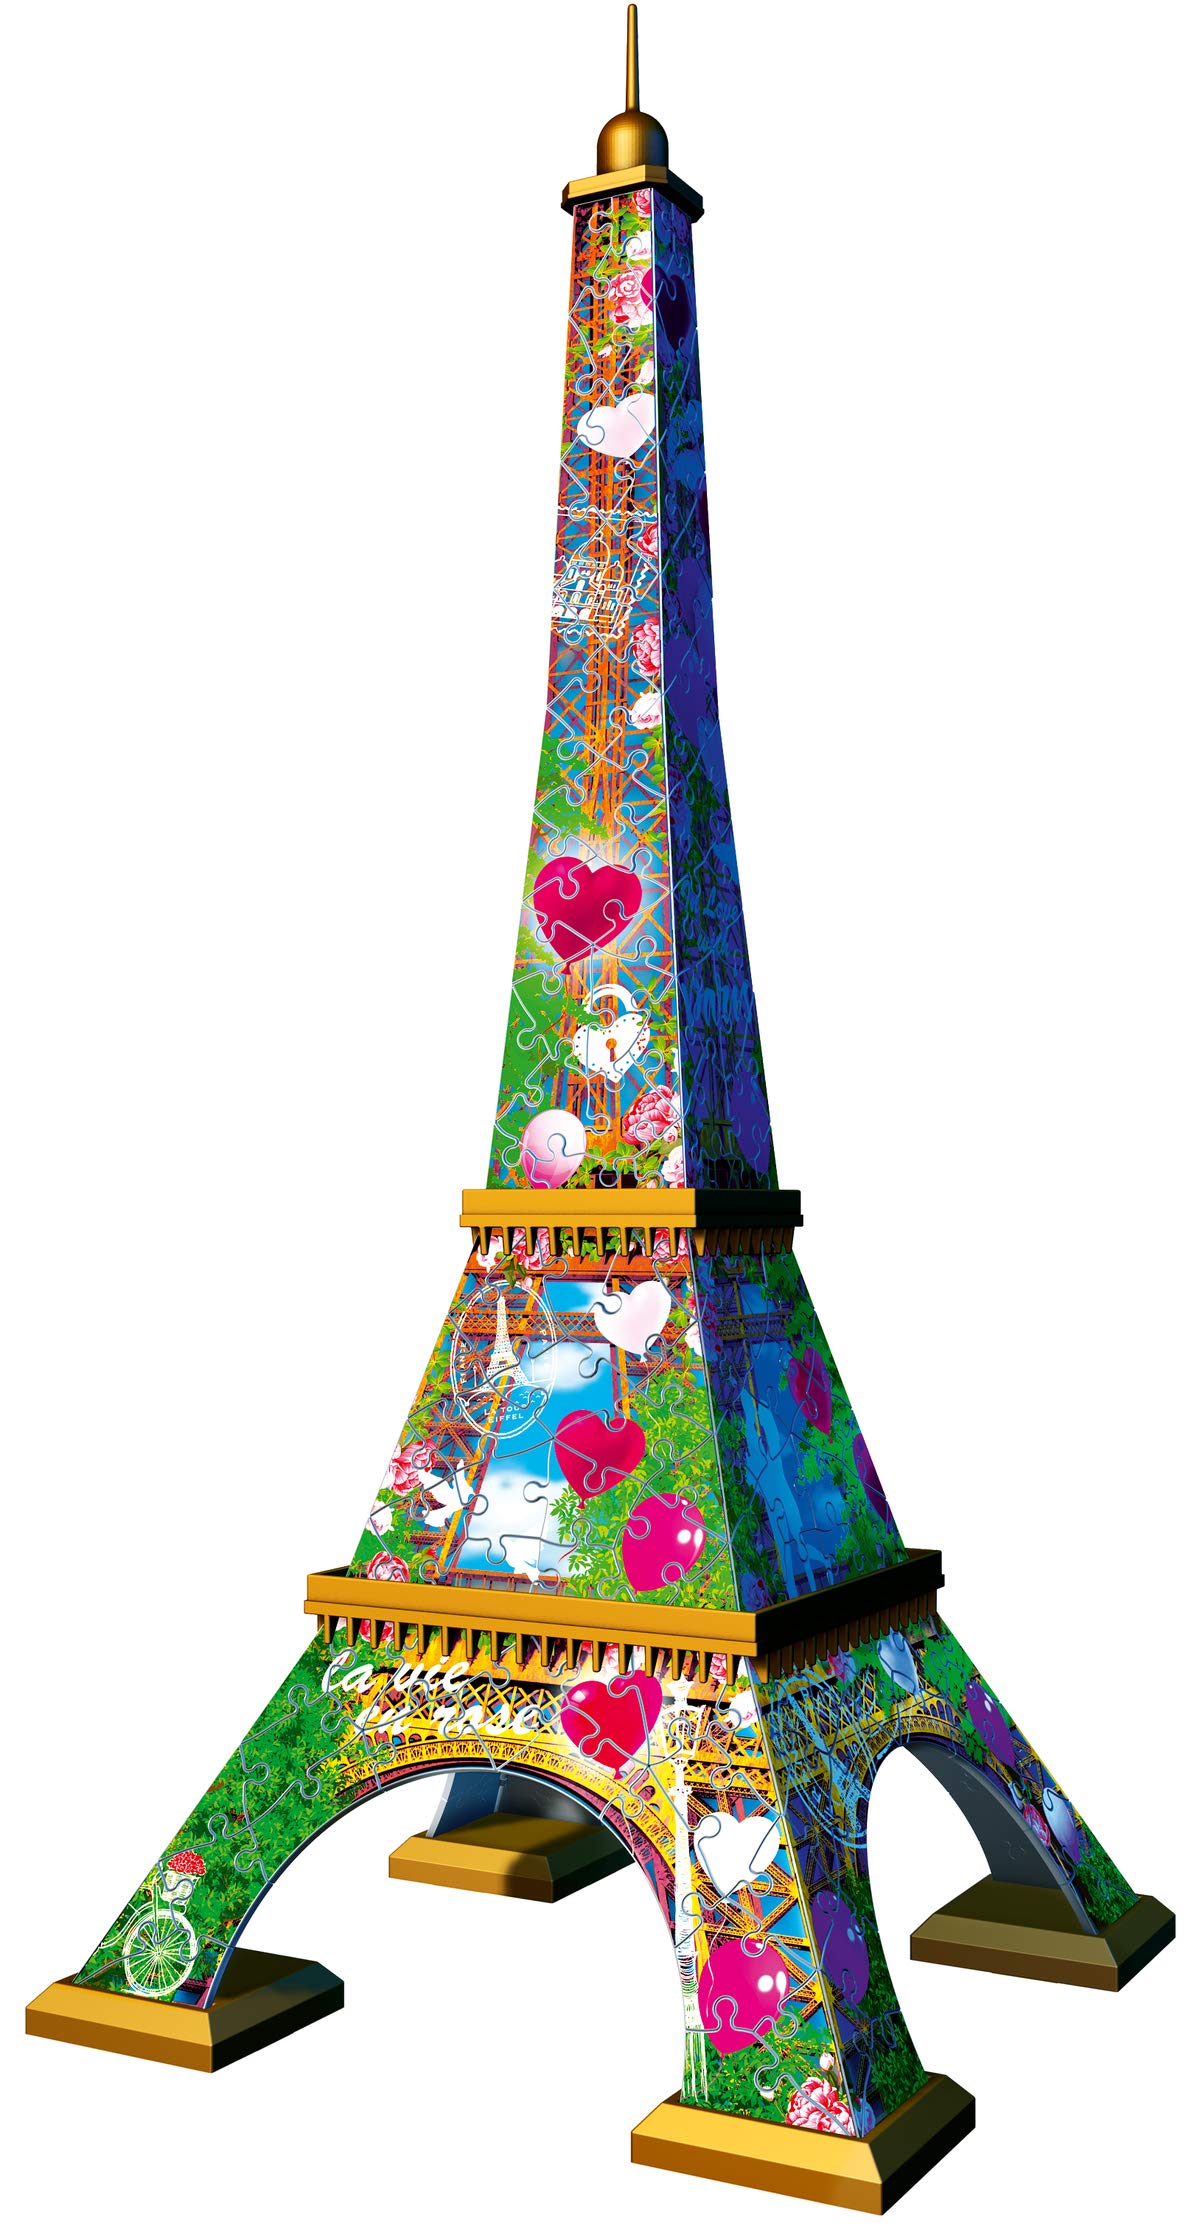 Puzzle 3D - Tour Eiffel Ravensburger-11183 216 pièces Puzzles - Monuments -  /Planet'Puzzles